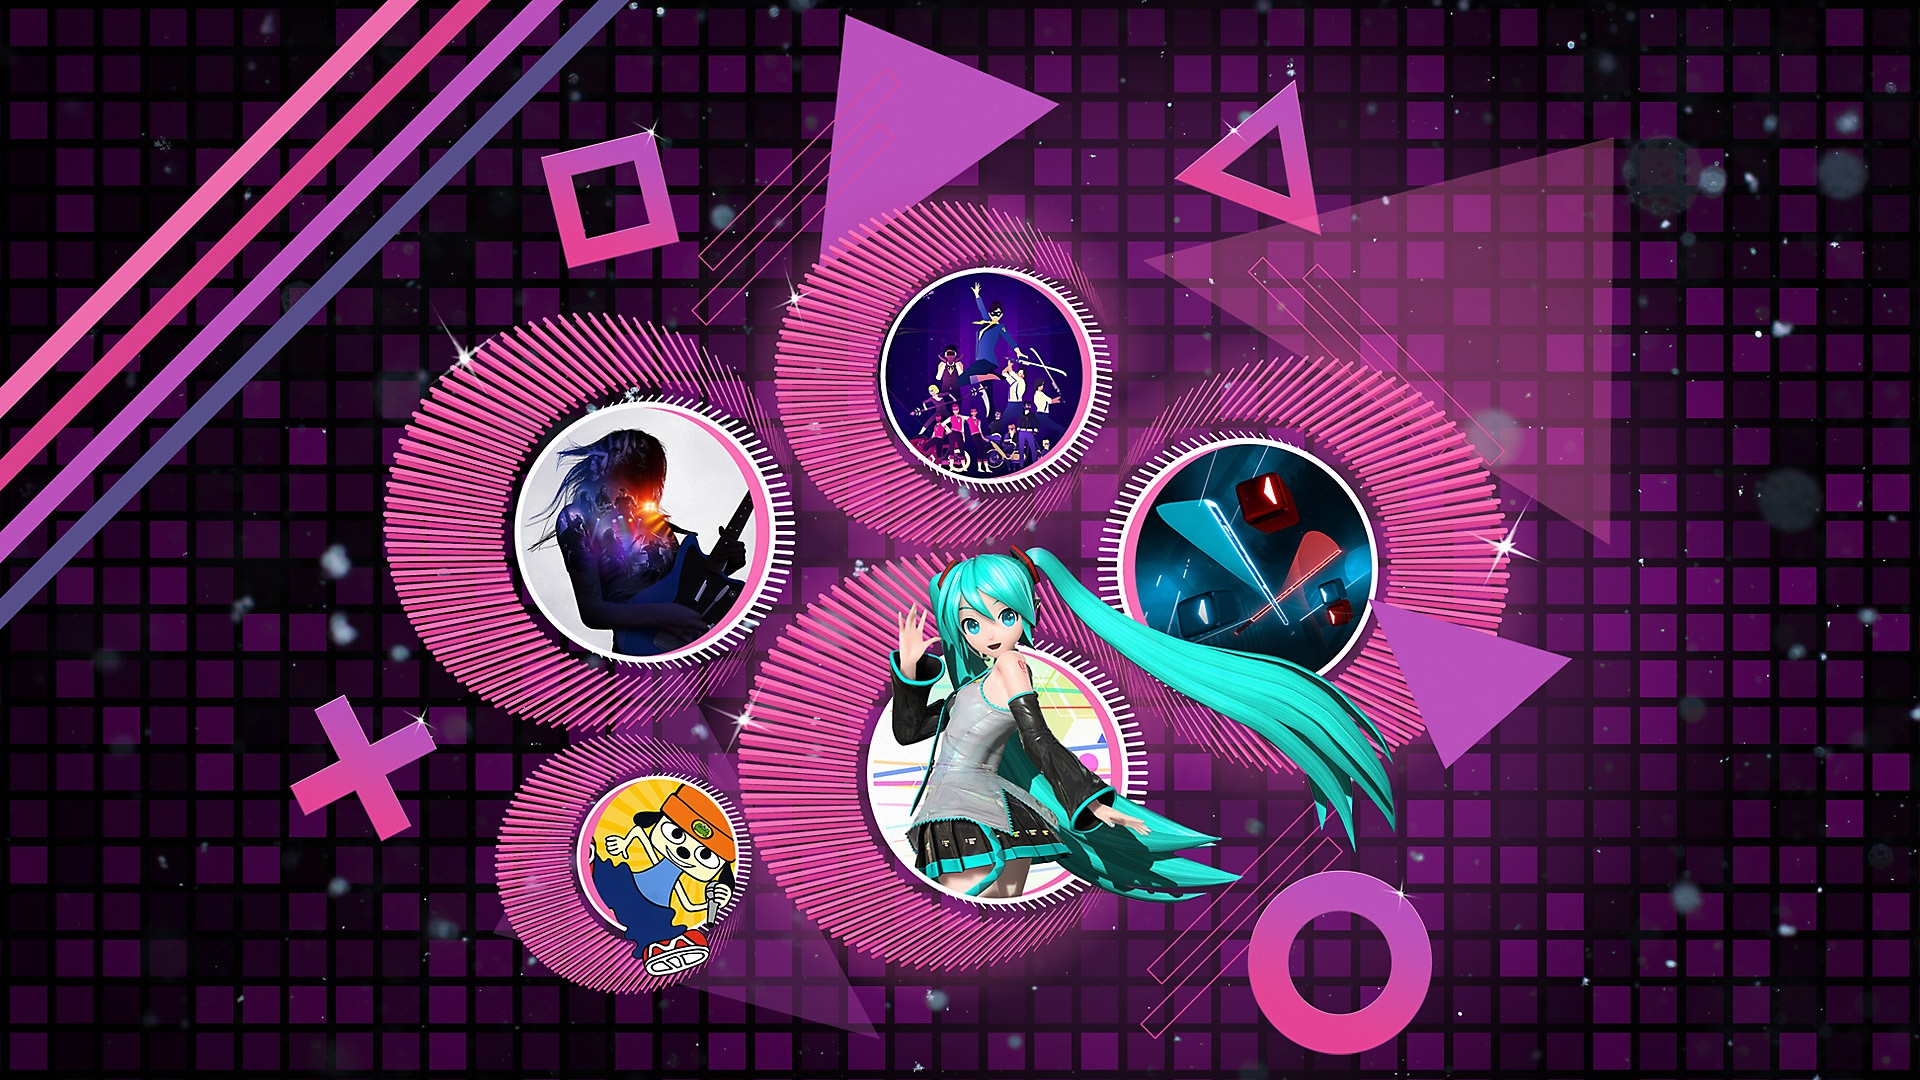 Les meilleurs jeux de rythme sur PS4 et PS5 - Illustration promotionnelle montrant Rock Band 4, PaRappa the Rapper Remastered, Hatsune Miku Project Diva X, Beat Saber et Sayonara Wild Hearts.